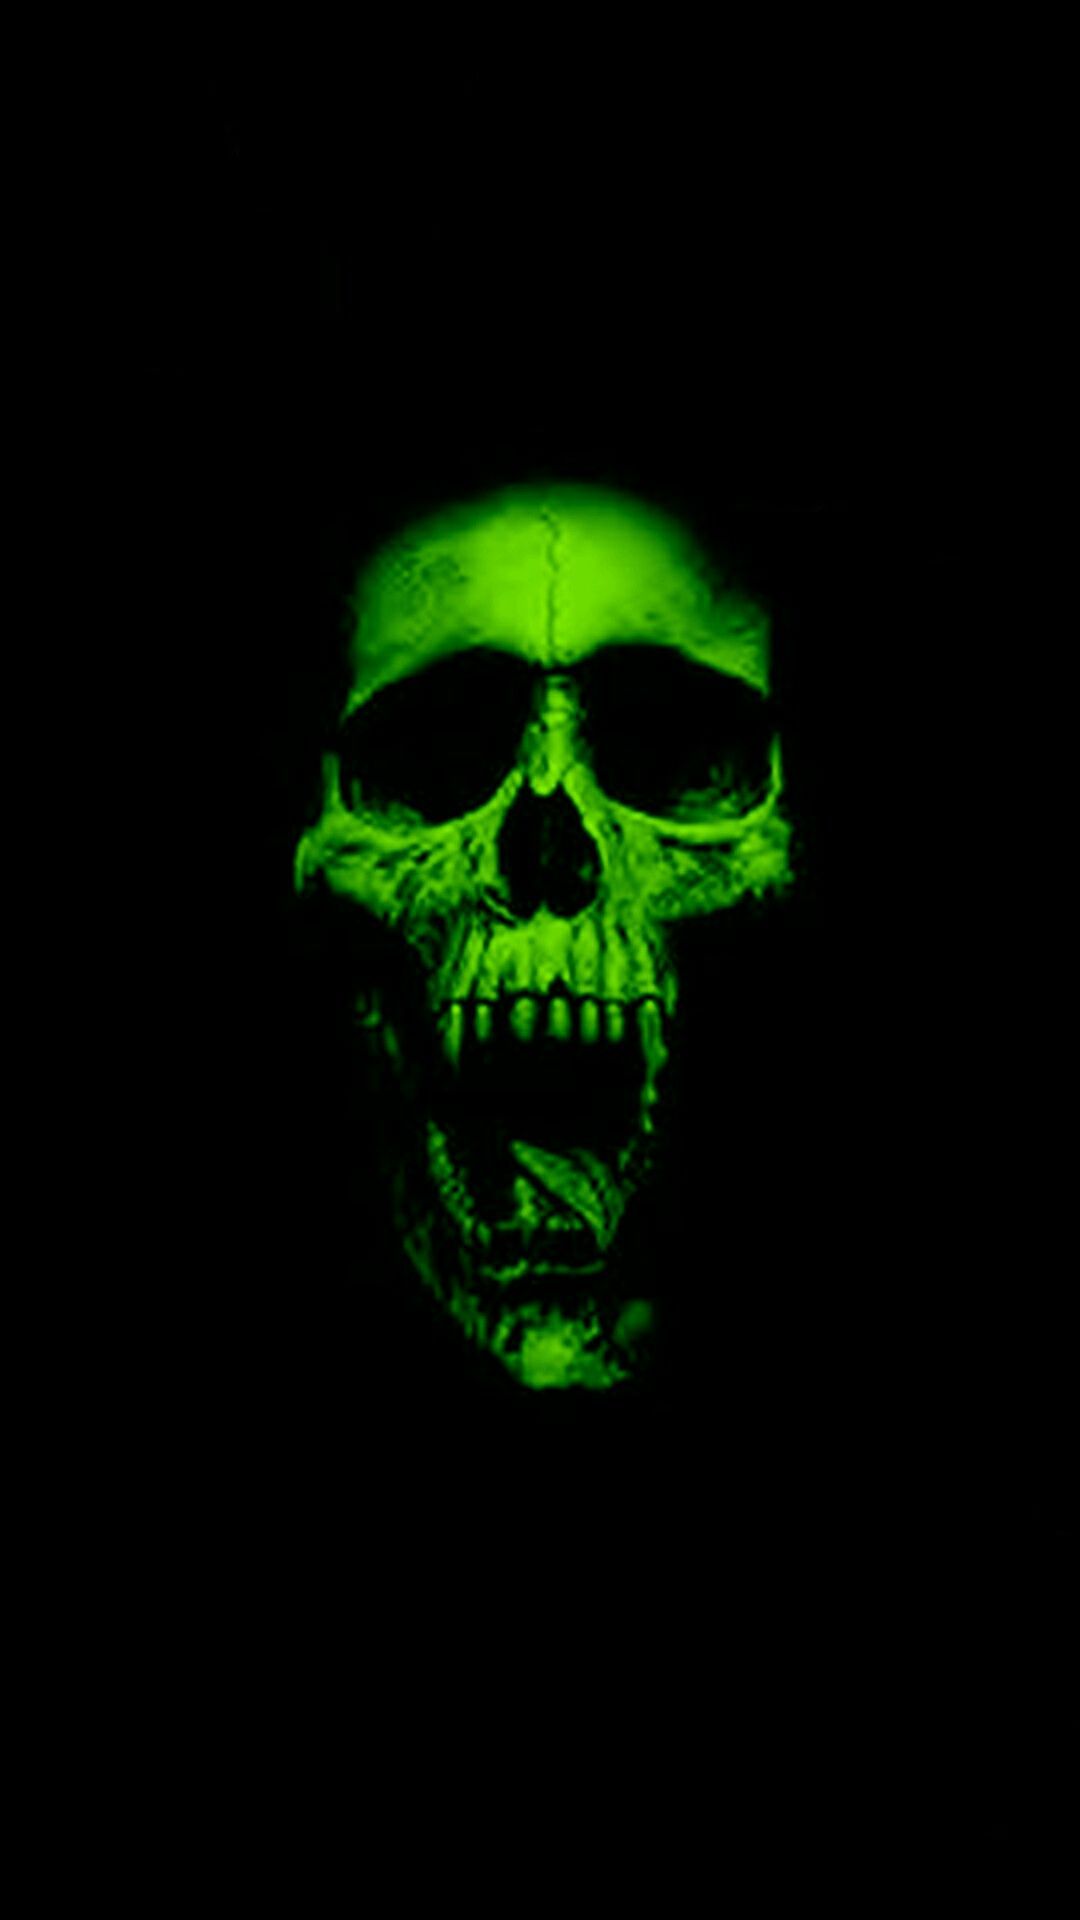 Skull wallpaper, Skull artwork .com